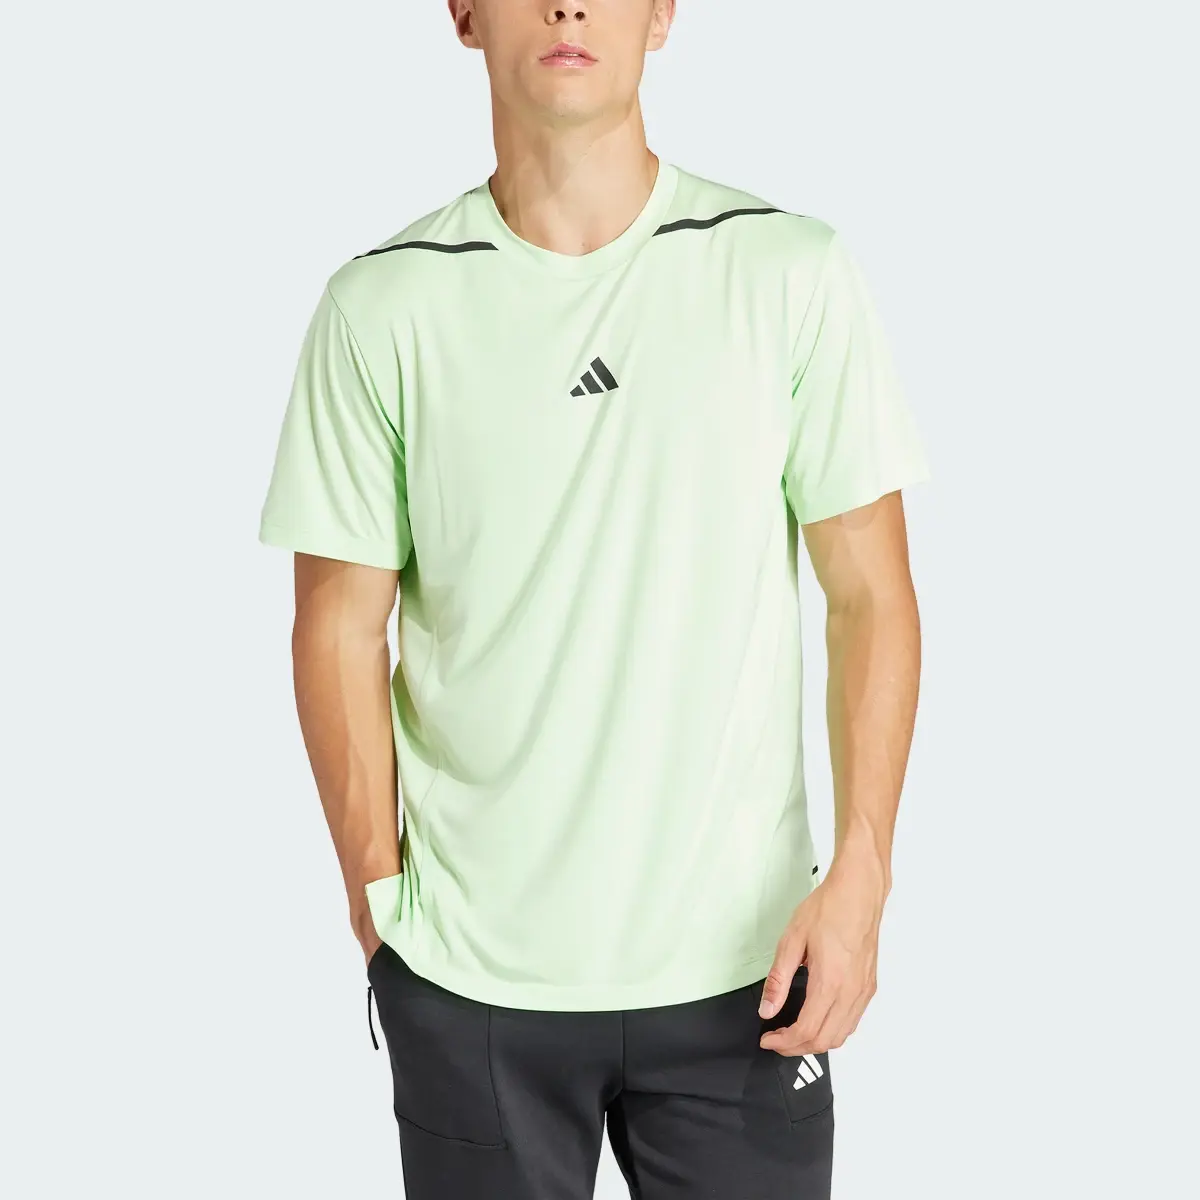 Adidas T-shirt de Treino Adistrong Designed for Training. 1